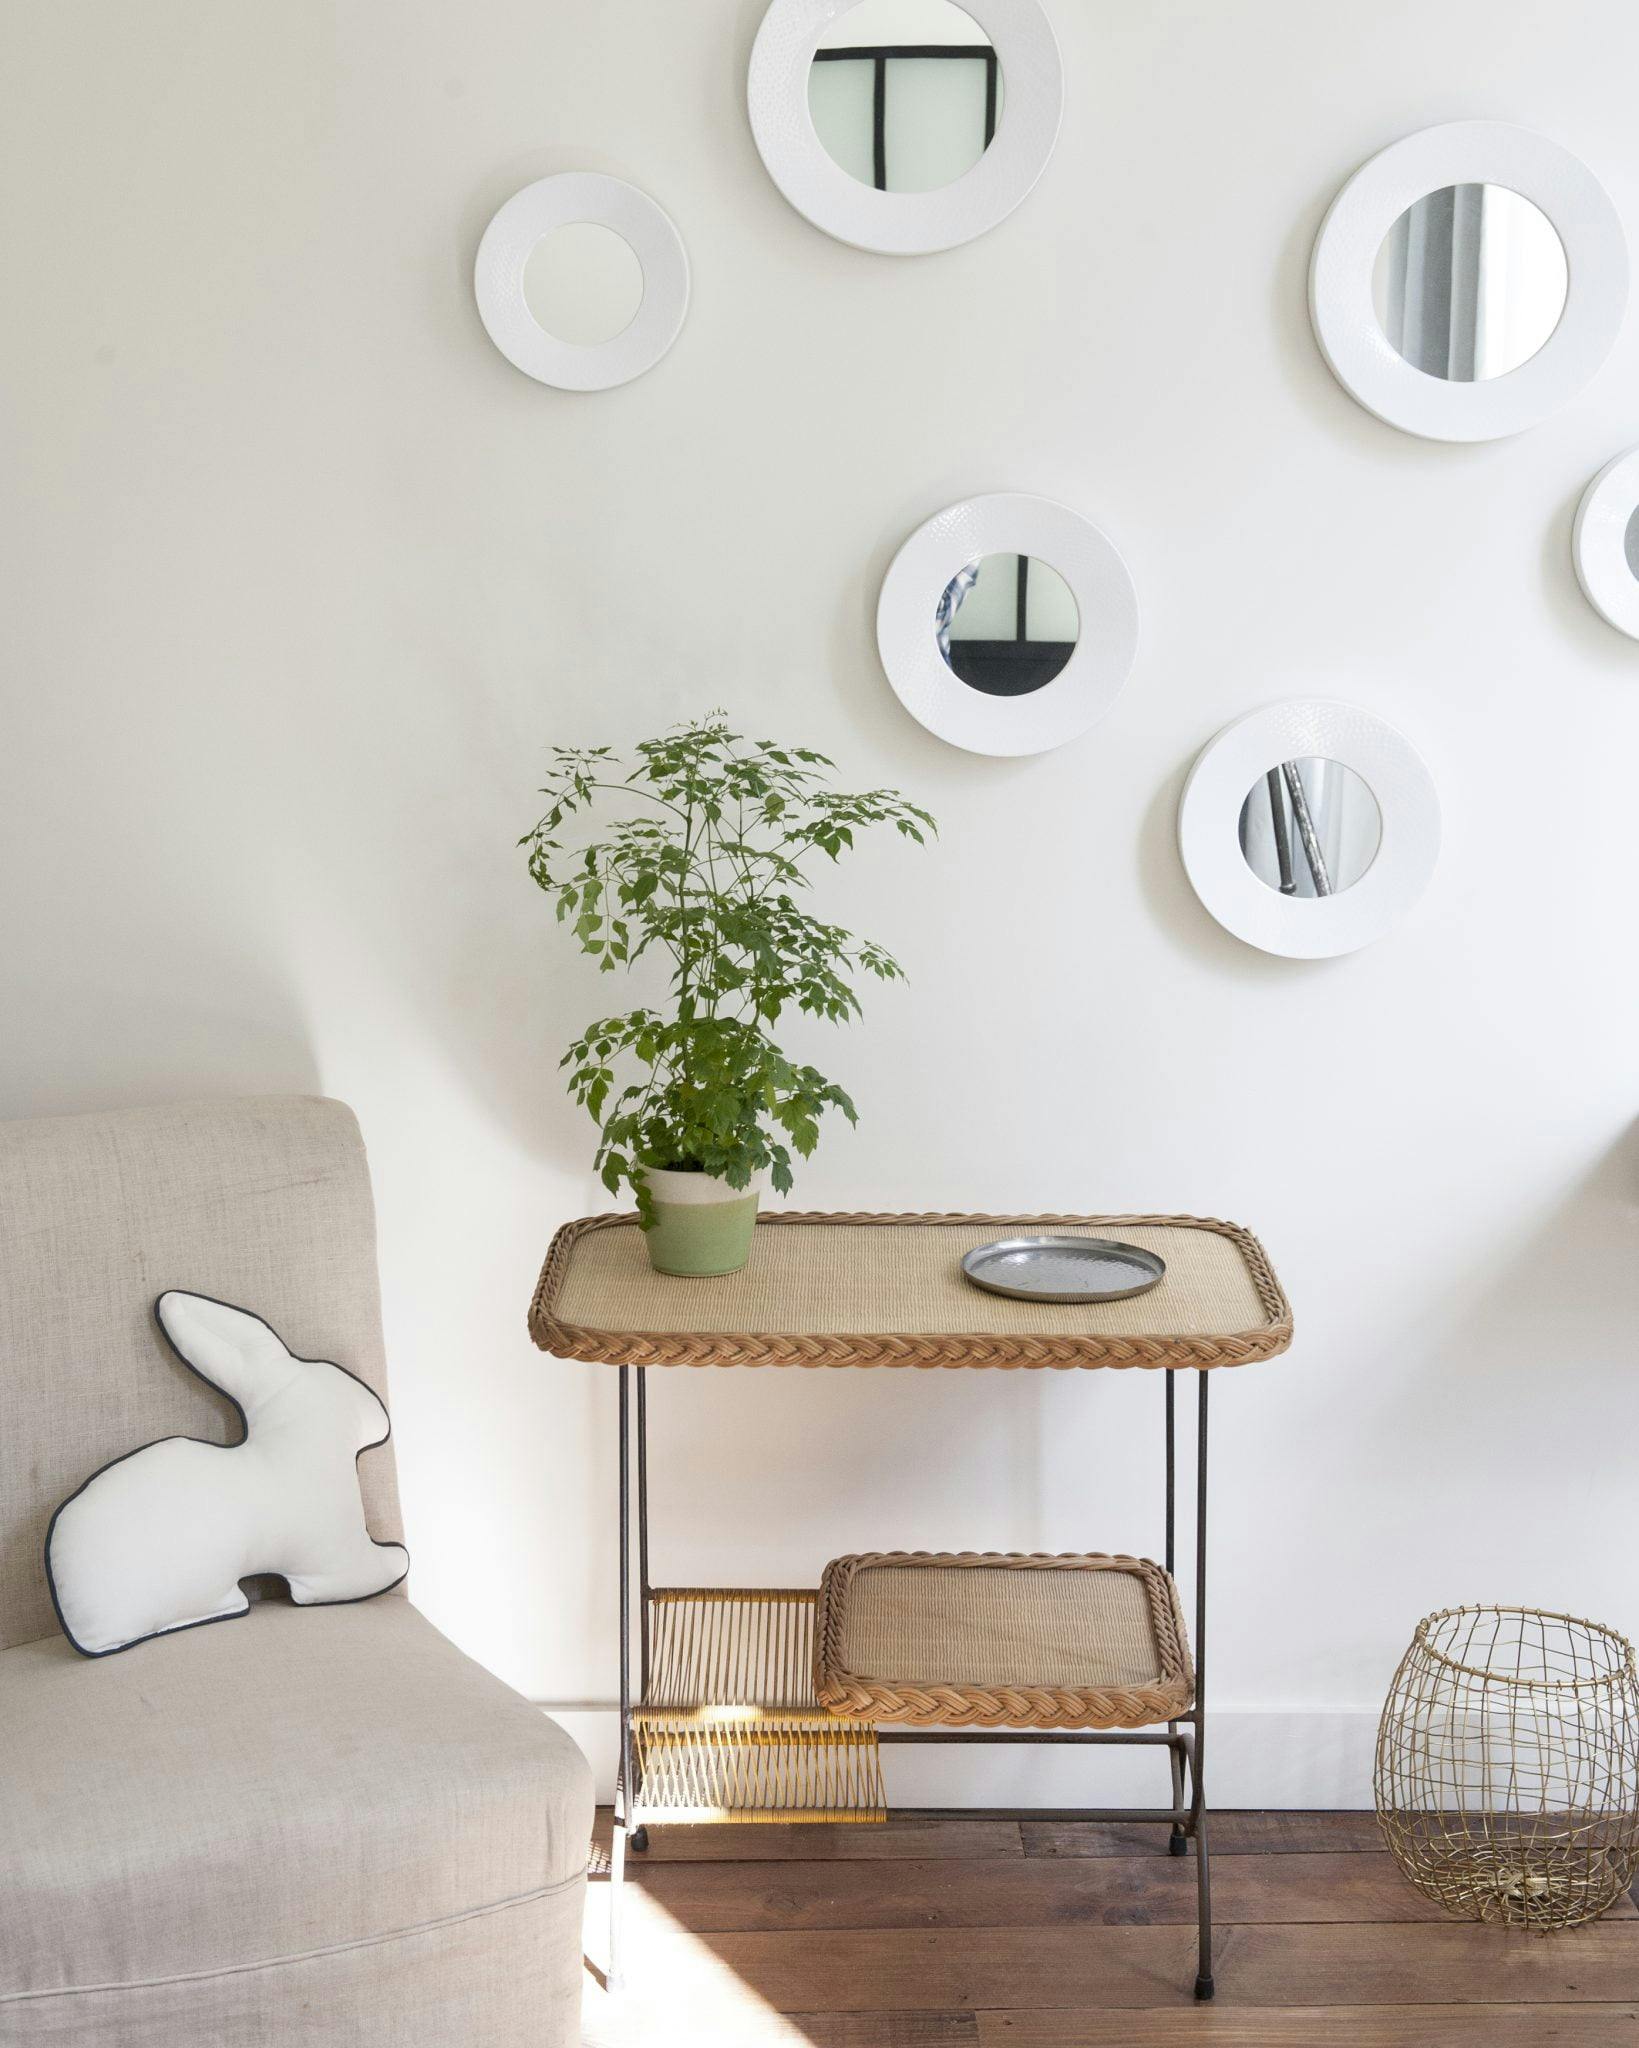 Détail d'une table en bois, miroirs sur mur blanc.